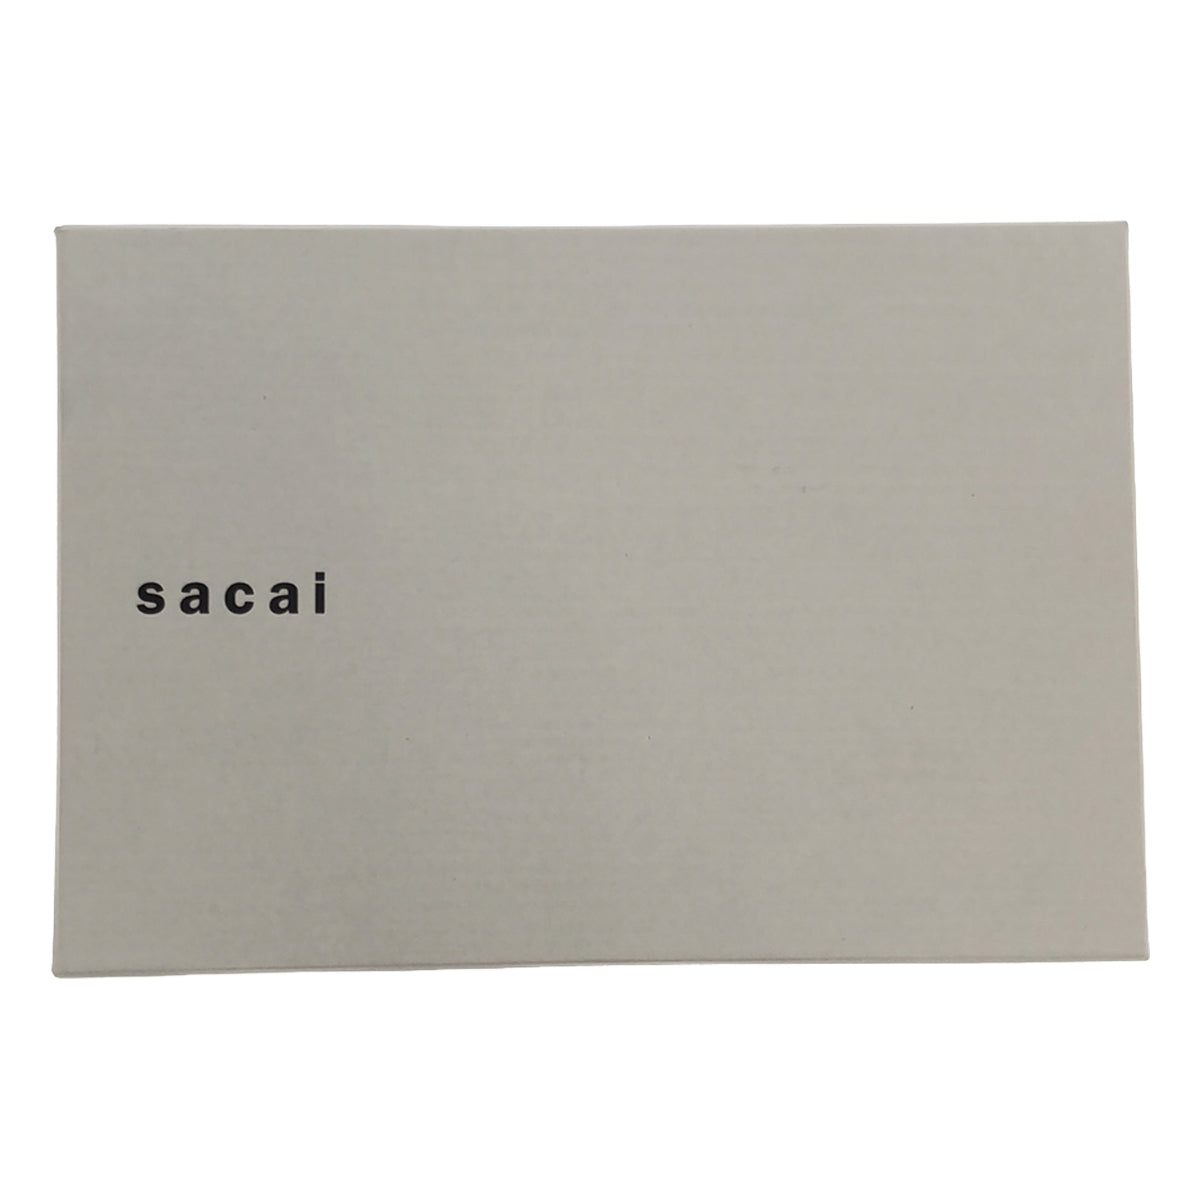 sacai / サカイ | × PORTER / ポーター Nylon Wallet / コンパクト ミニウォレット 財布 / ユニセックス | OS | その他